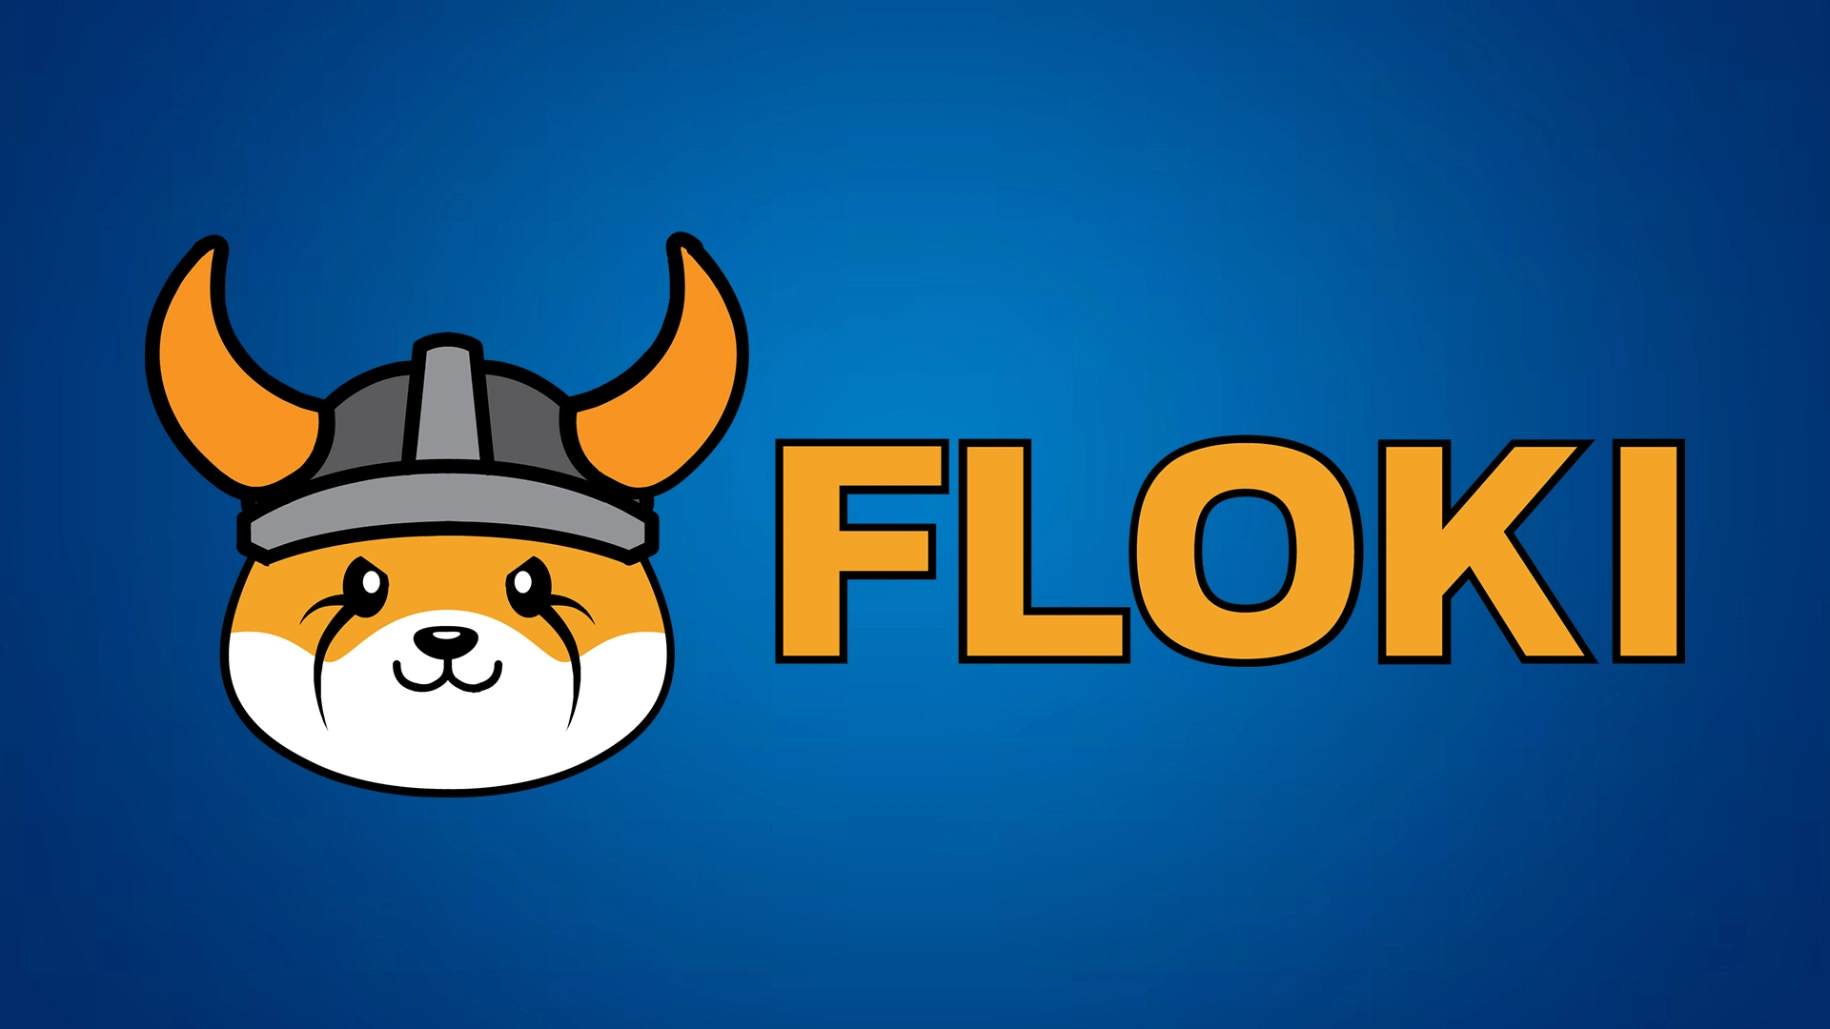 What is Floki?